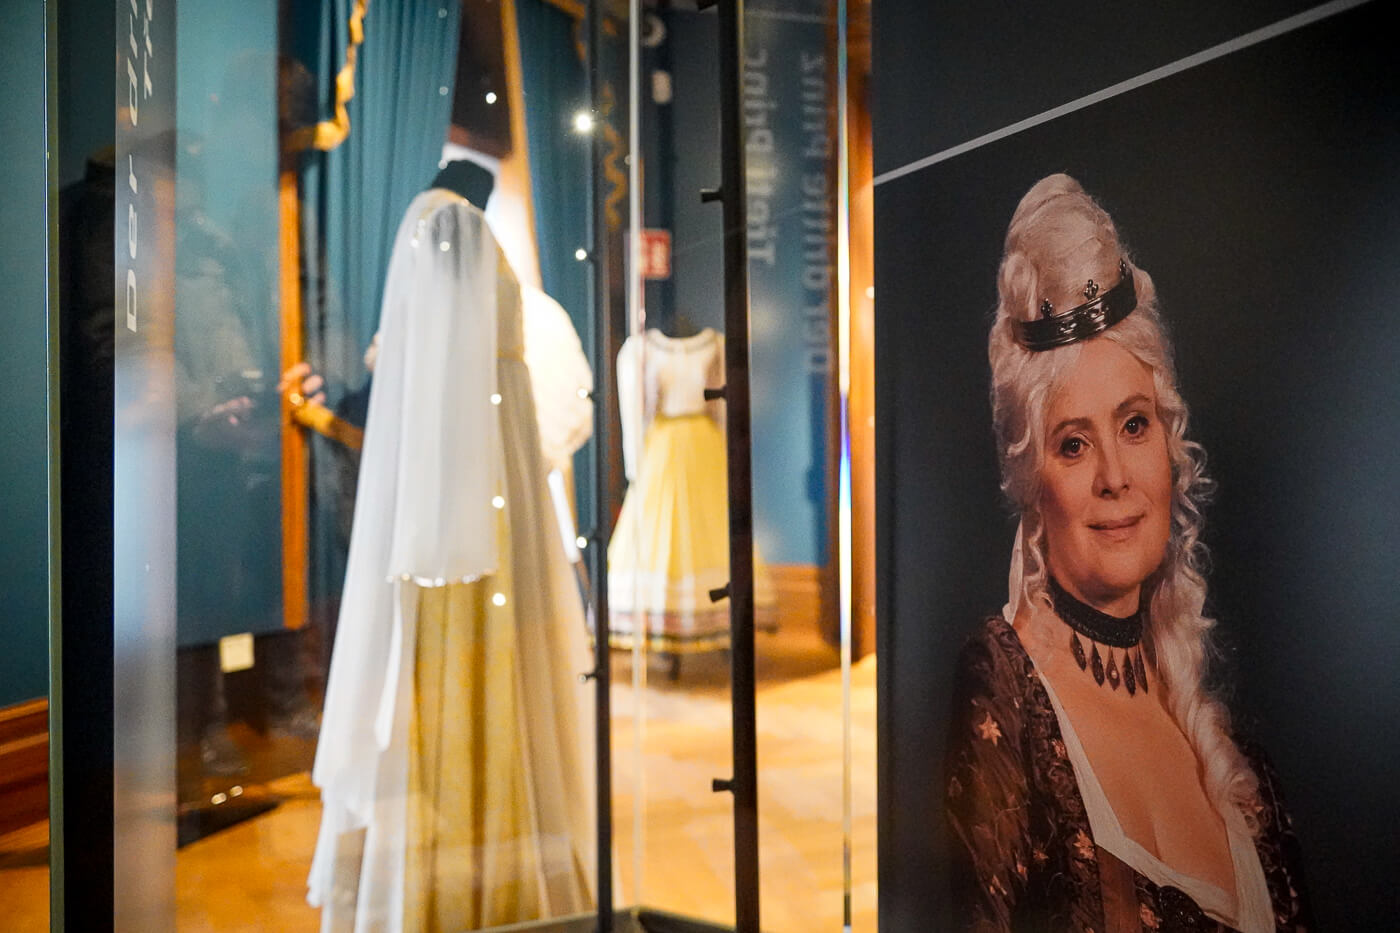 Original Kostüme und Erinnerungen an die Schauspielerin Libuše Šafránková in der Ausstellung "Drei Haselnüsse für Aschenbrödel" in Schloss Moritzburg